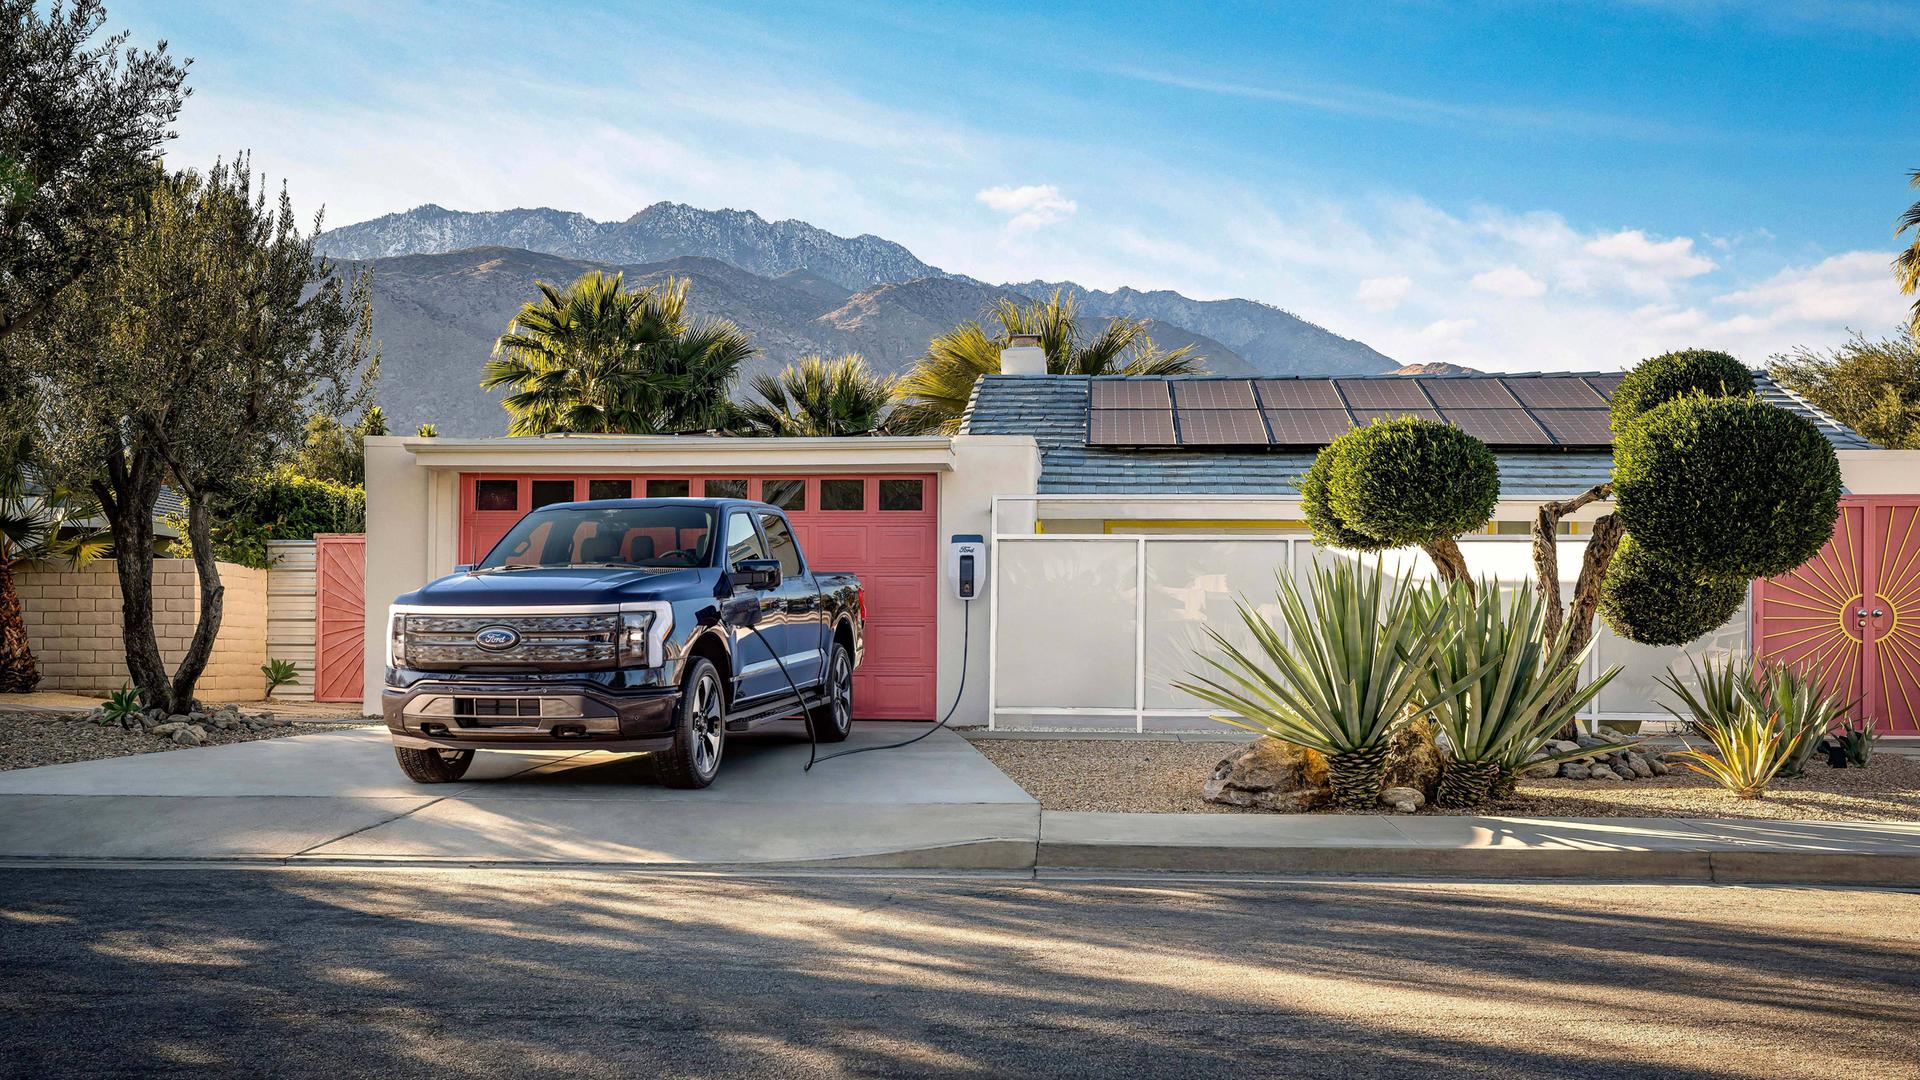 Ein Ford F-150 Lightning Pickup-Truck steht vor einem typischen amerikanischen Haus mit Garage, wo er aufgeladen wird. Im Hintergrund sind berge und Palem zu sehen.